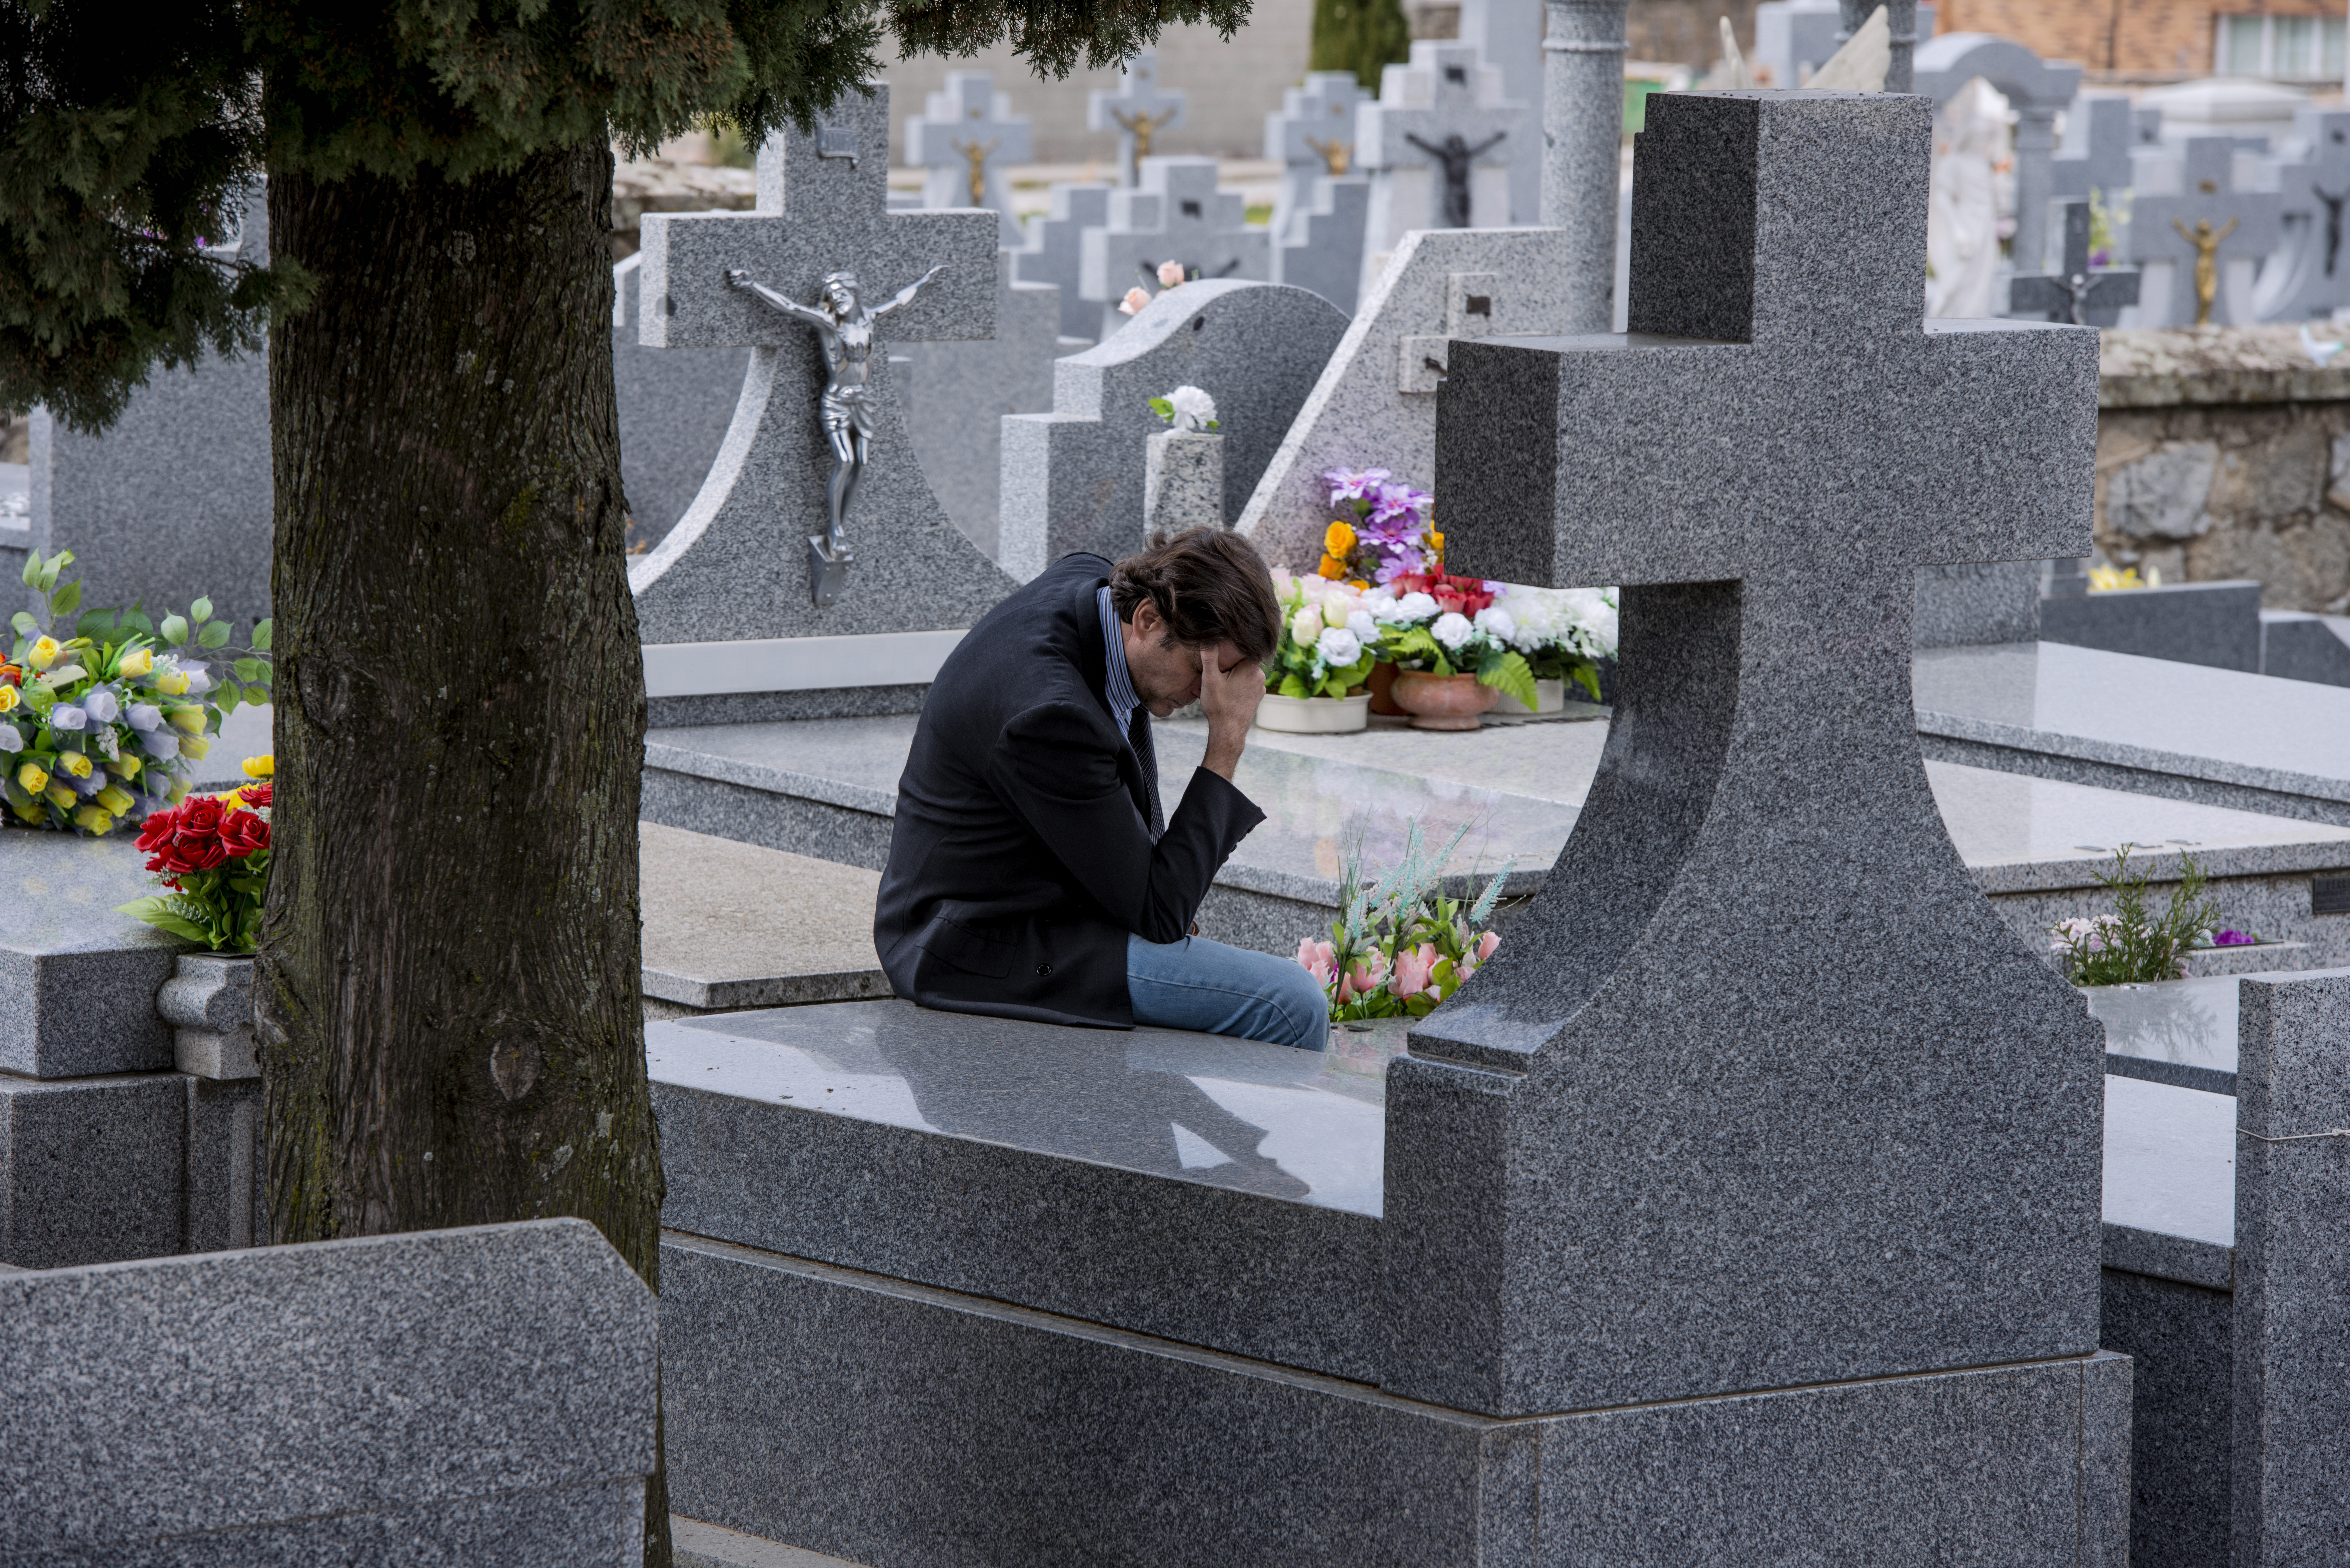 Ein am Boden zerstörter Mann sitzt auf einem Friedhof | Quelle: Shutterstock